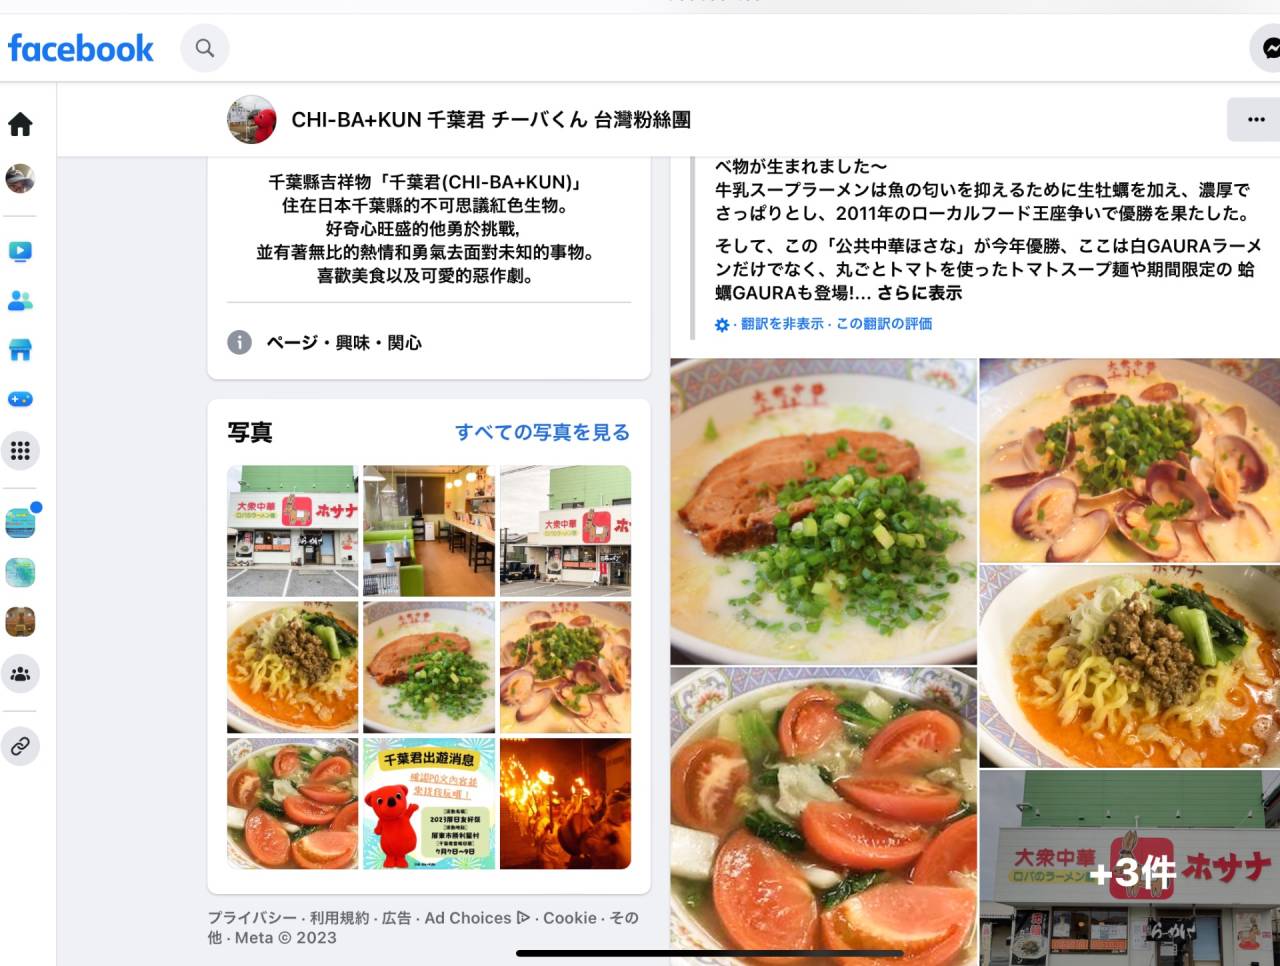 7/14(金)通常営業。 千葉県(チーバくん)のFacebookにて　海外観光向けに当店紹介されています。